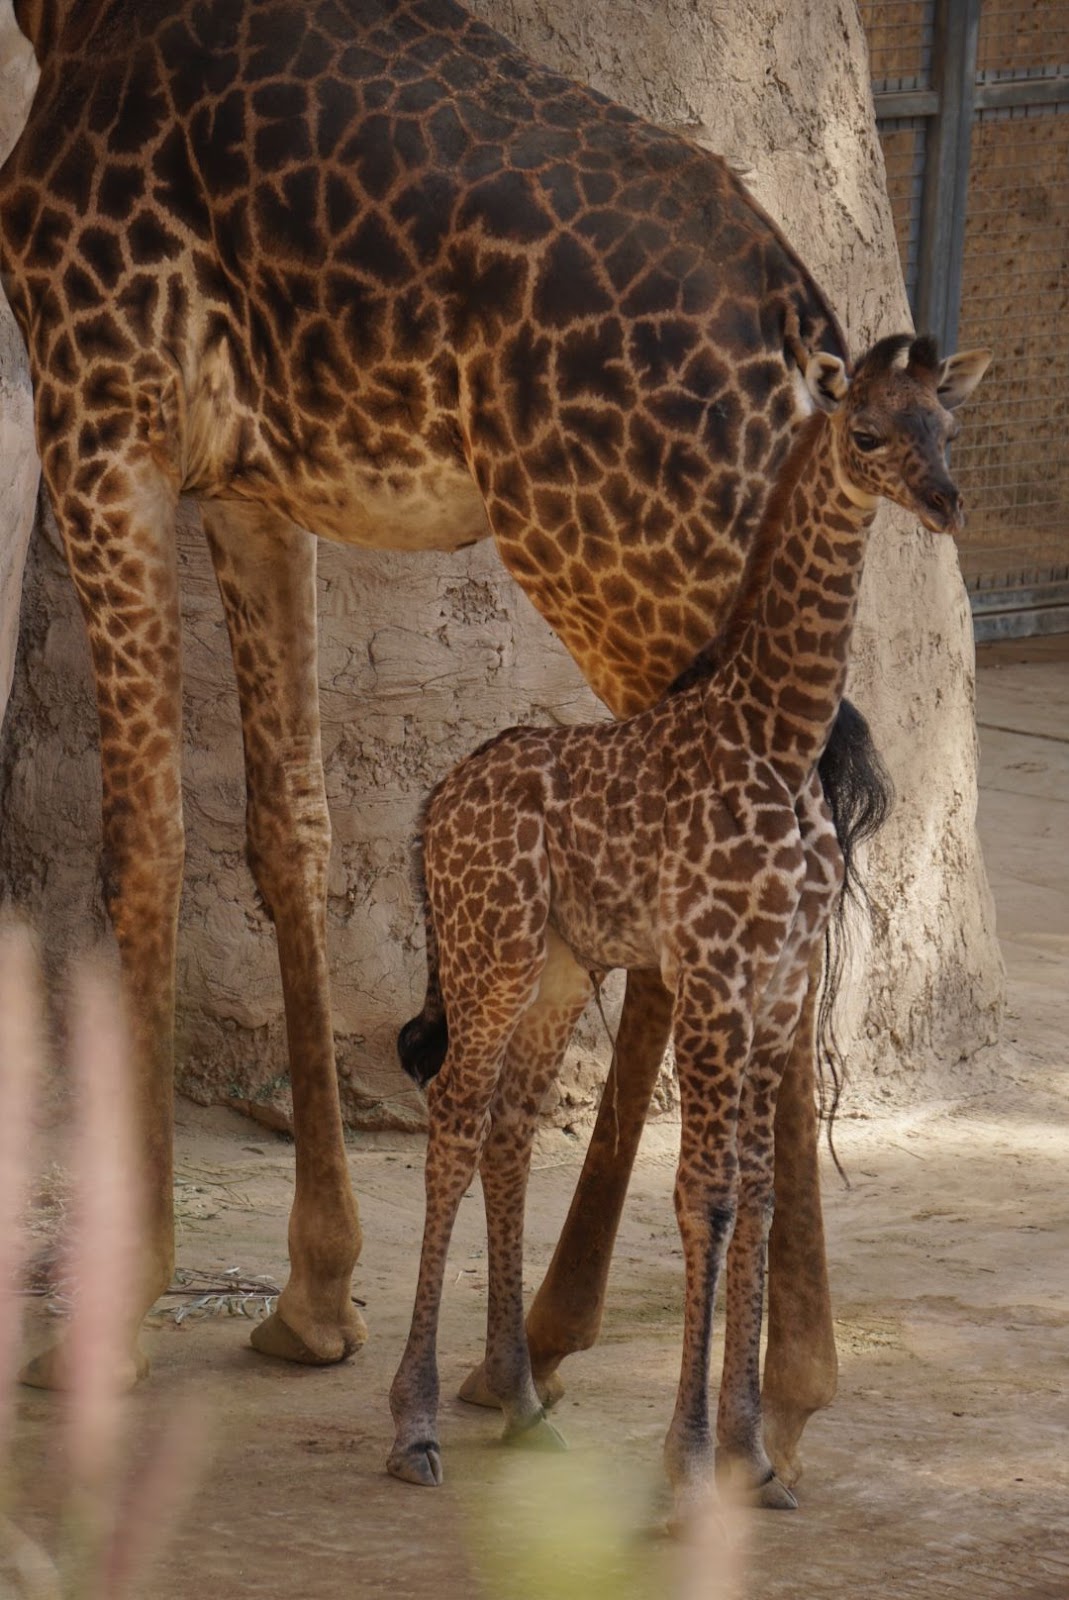 Photo of a baby giraffe standing next to an adult giraffe